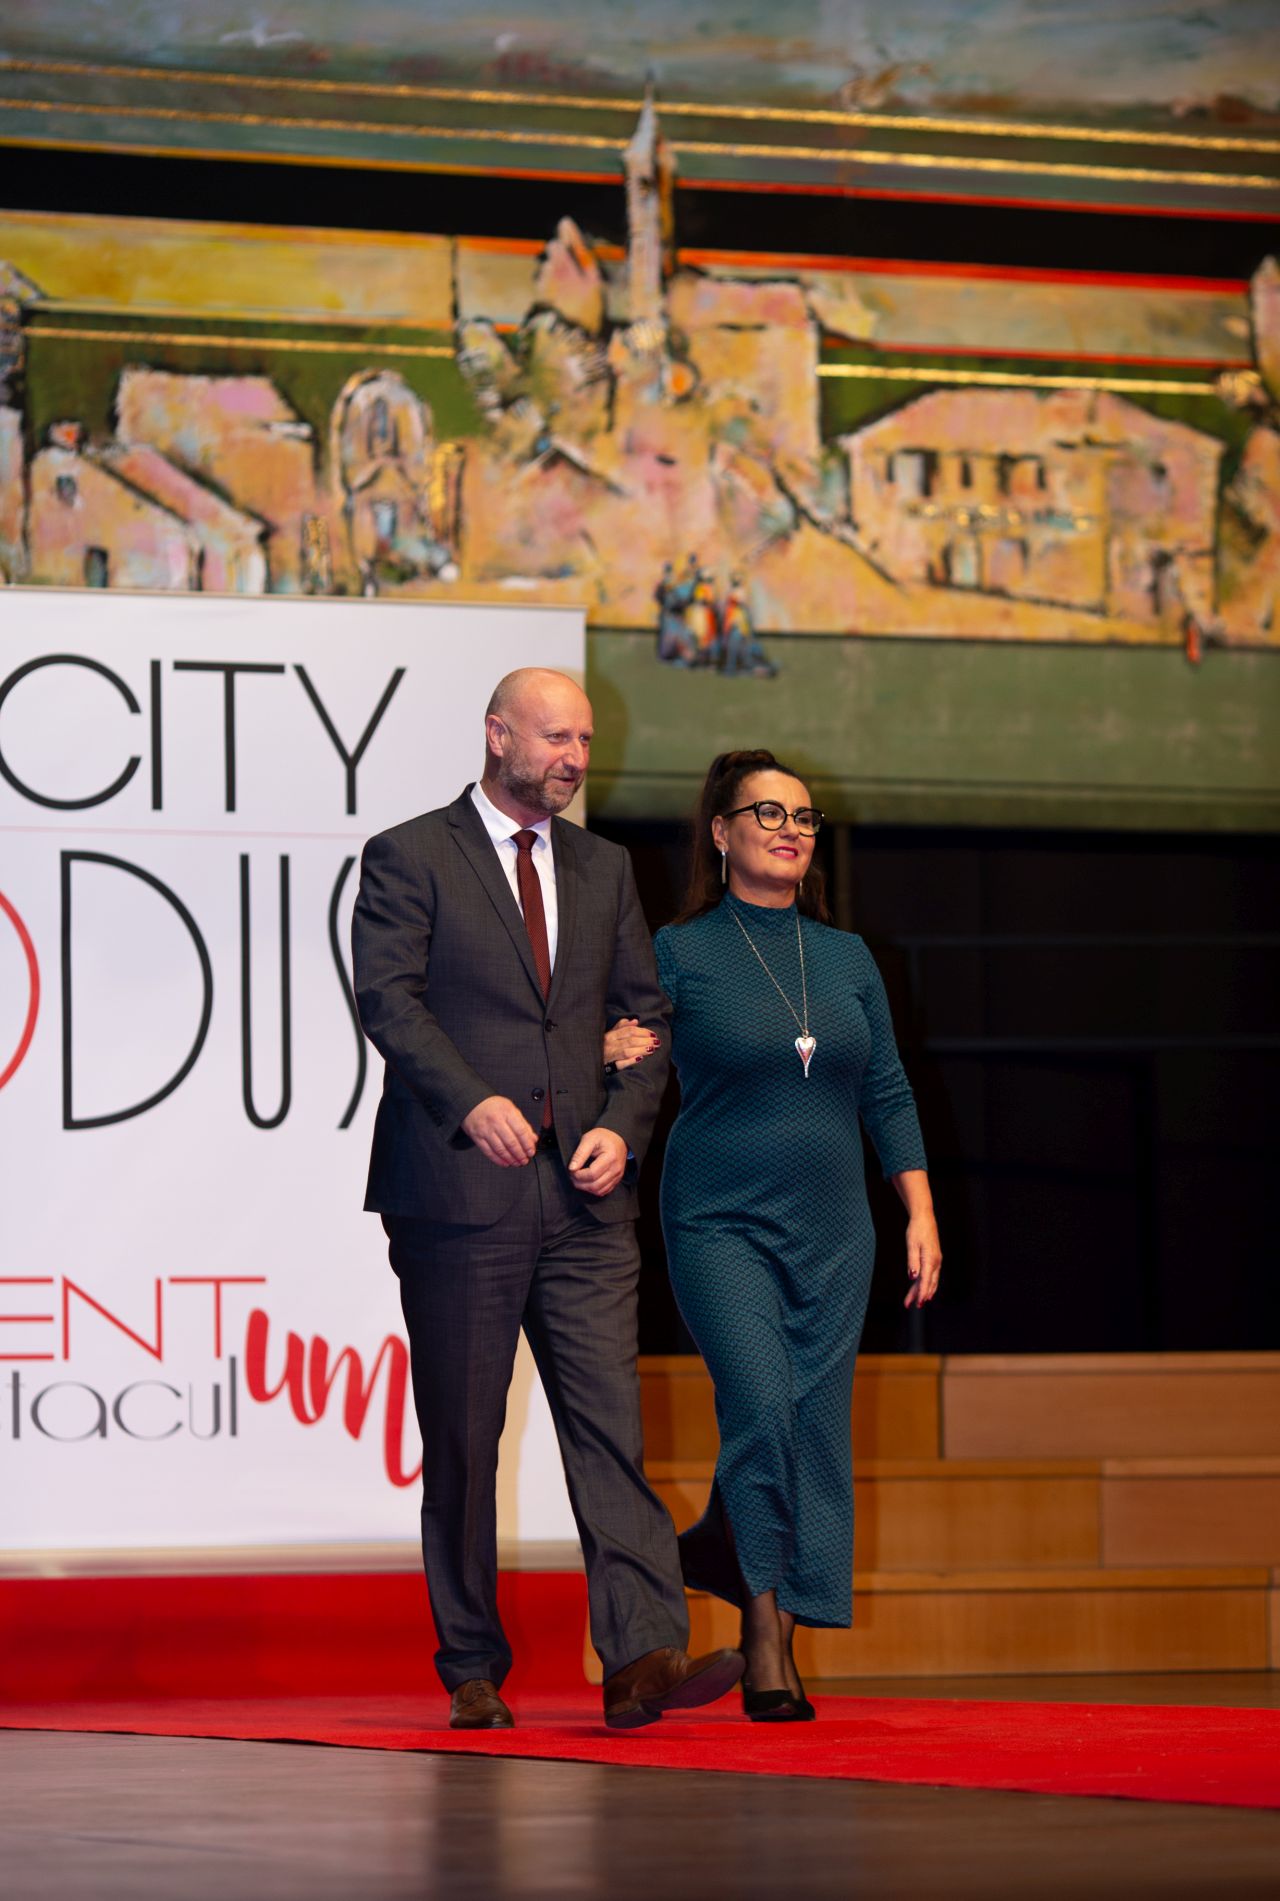 Političarke kao manekenke u modno-humanitarnom projektu City Modus